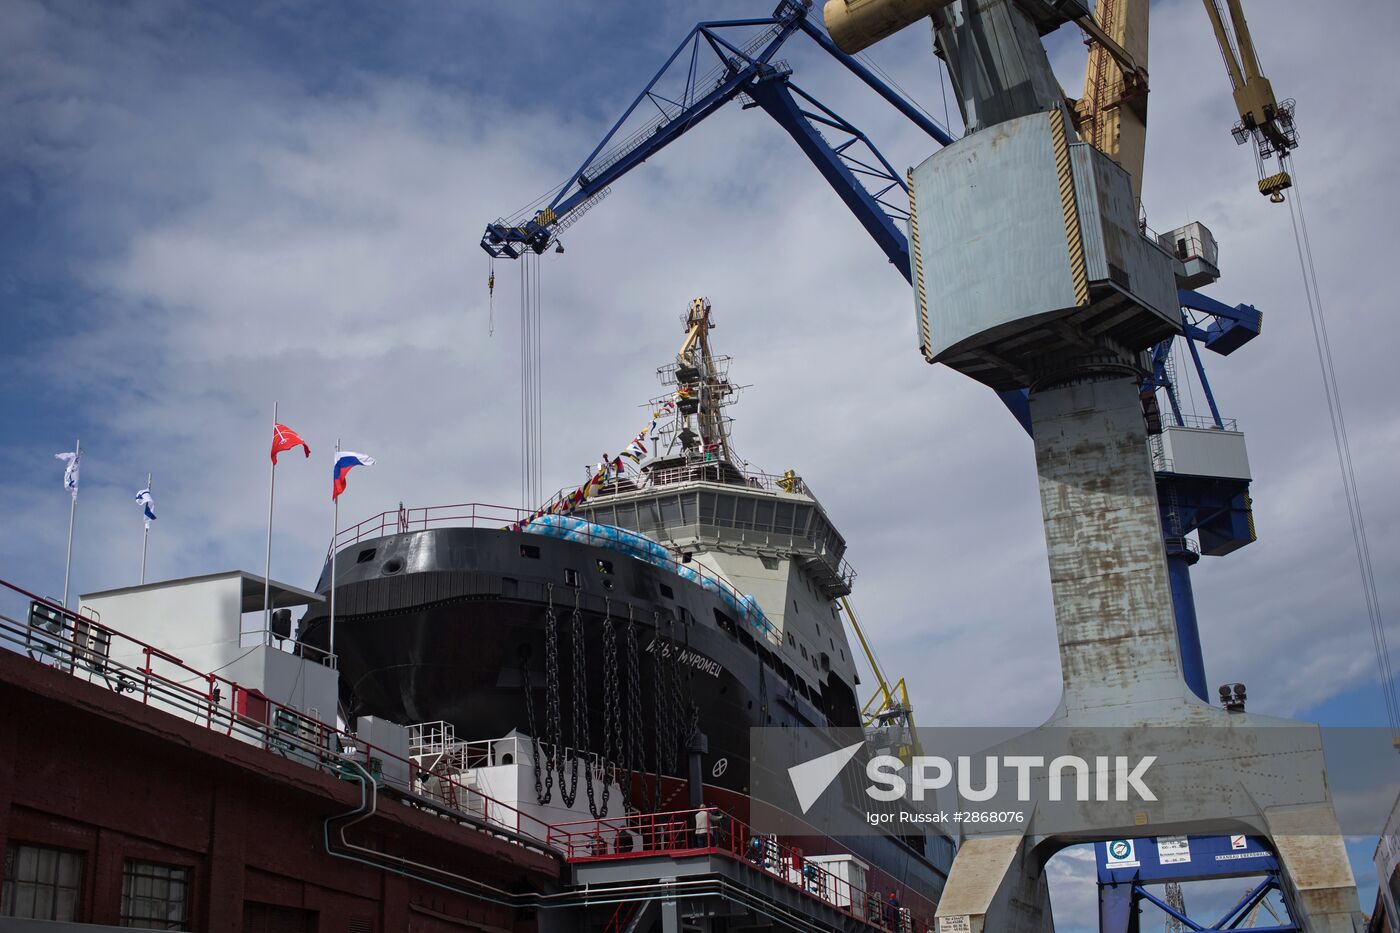 The Ilya Muromets icebreaker floated in St. Petersburg